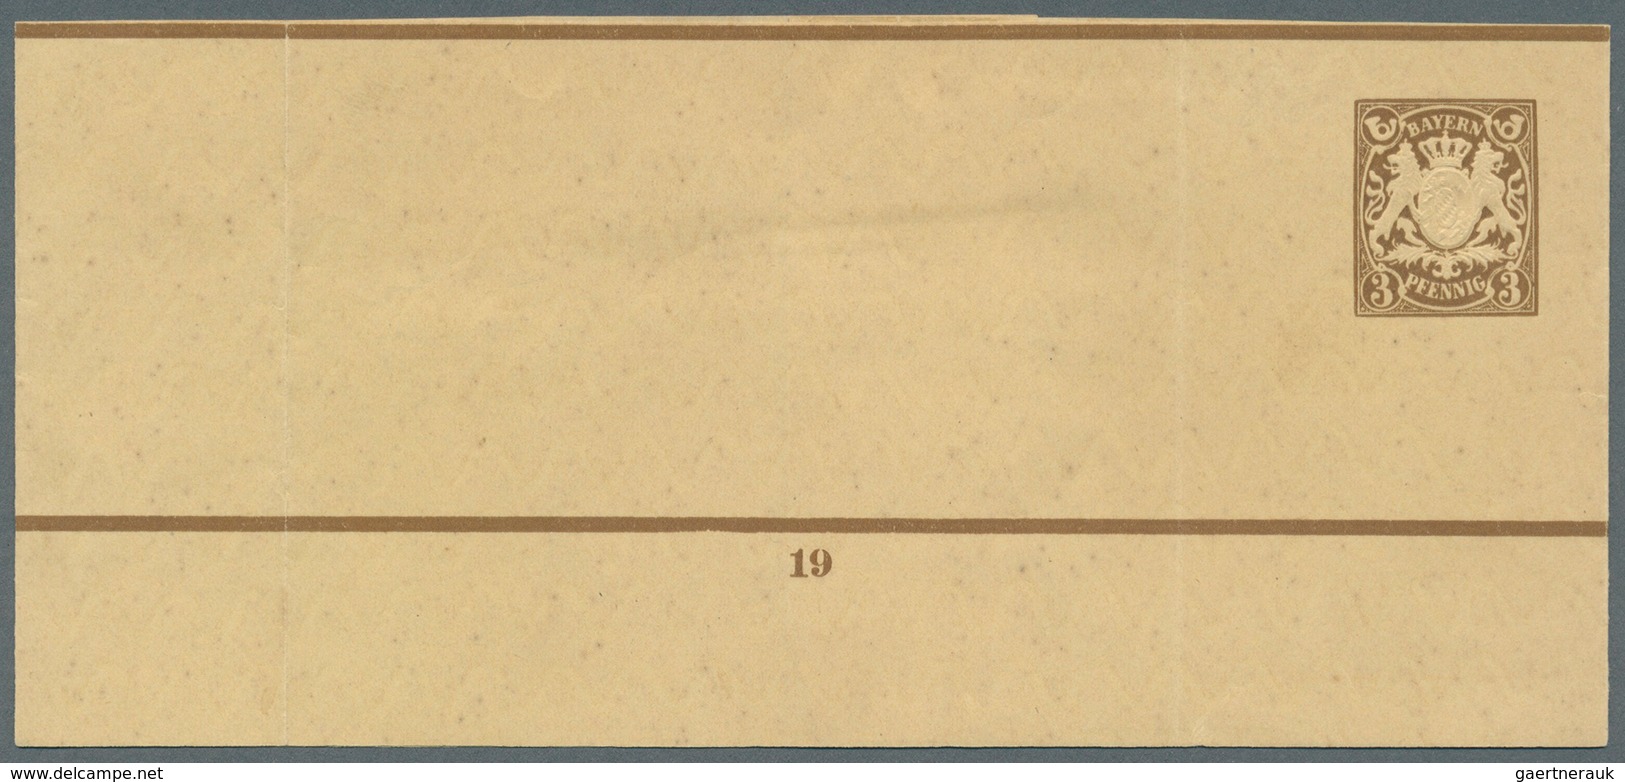 Bayern - Ganzsachen: 1869/1920, große Sammlung von insgesamt 608 nur versch. Ganzsachen mit Postkart